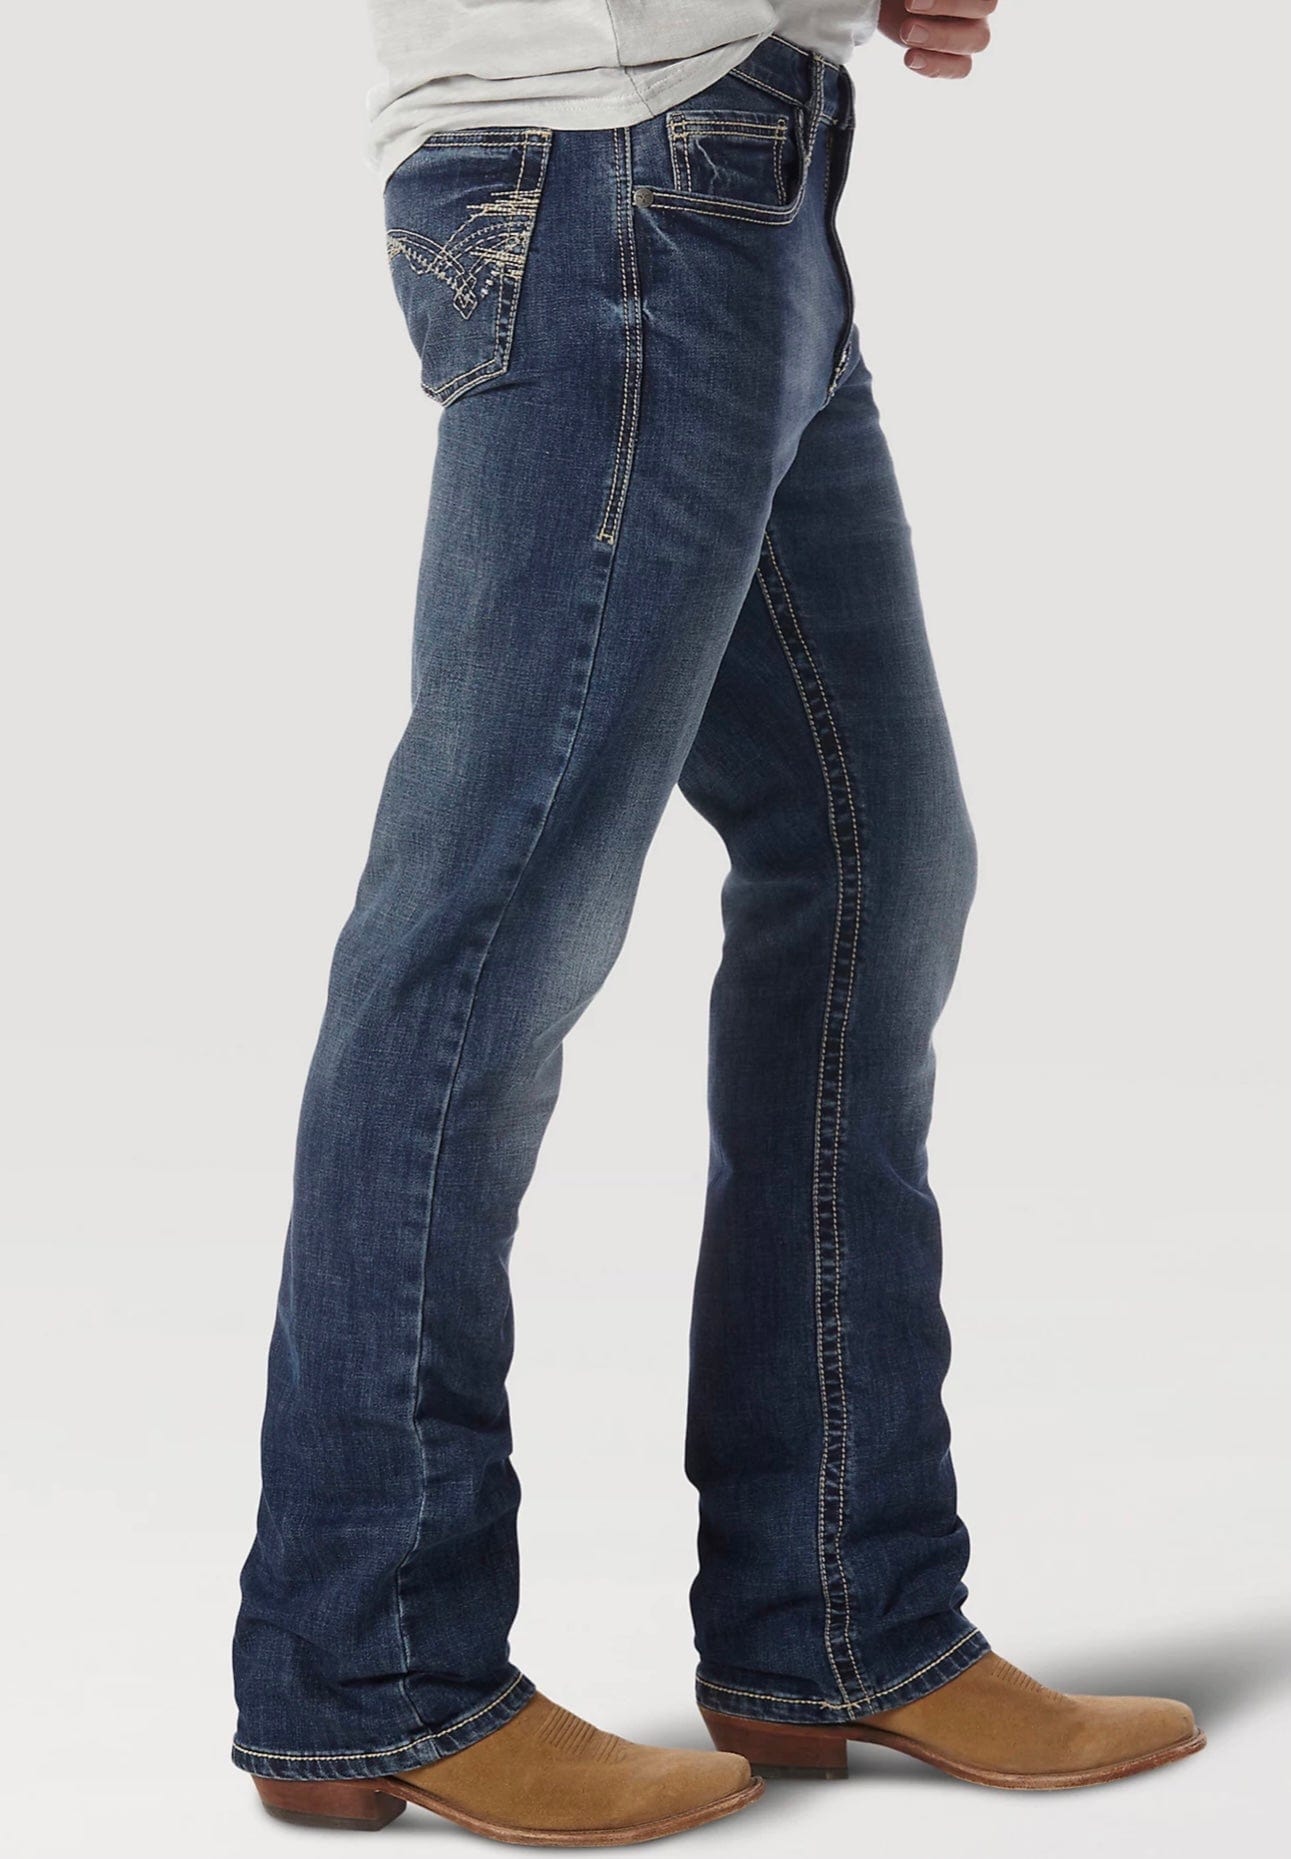 Vintage Men's Bottoms: Jeans, Pants + More